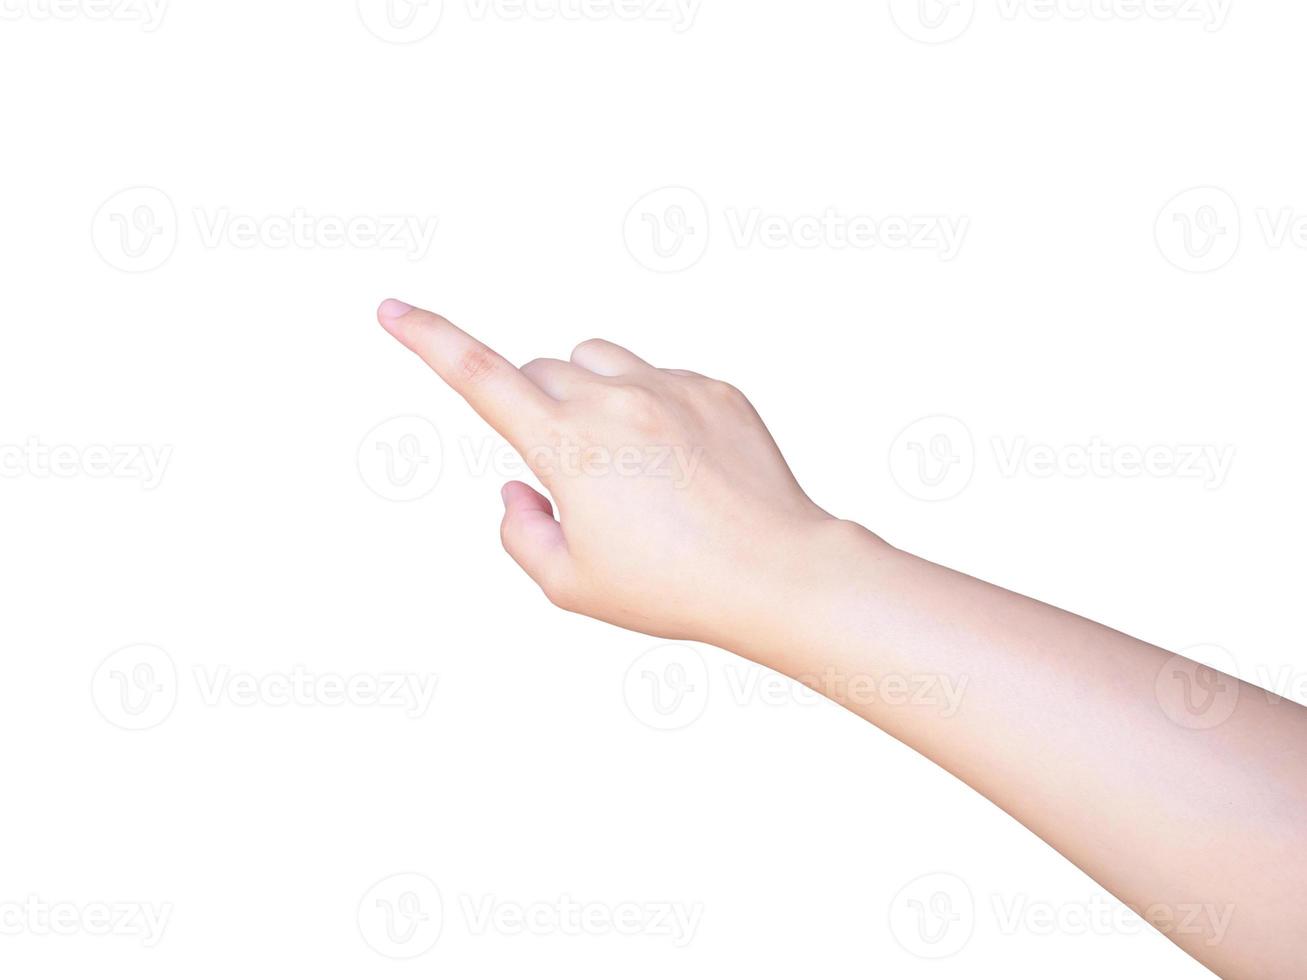 vrouwelijke hand aanraken of wijzen op iets geïsoleerd op wit foto